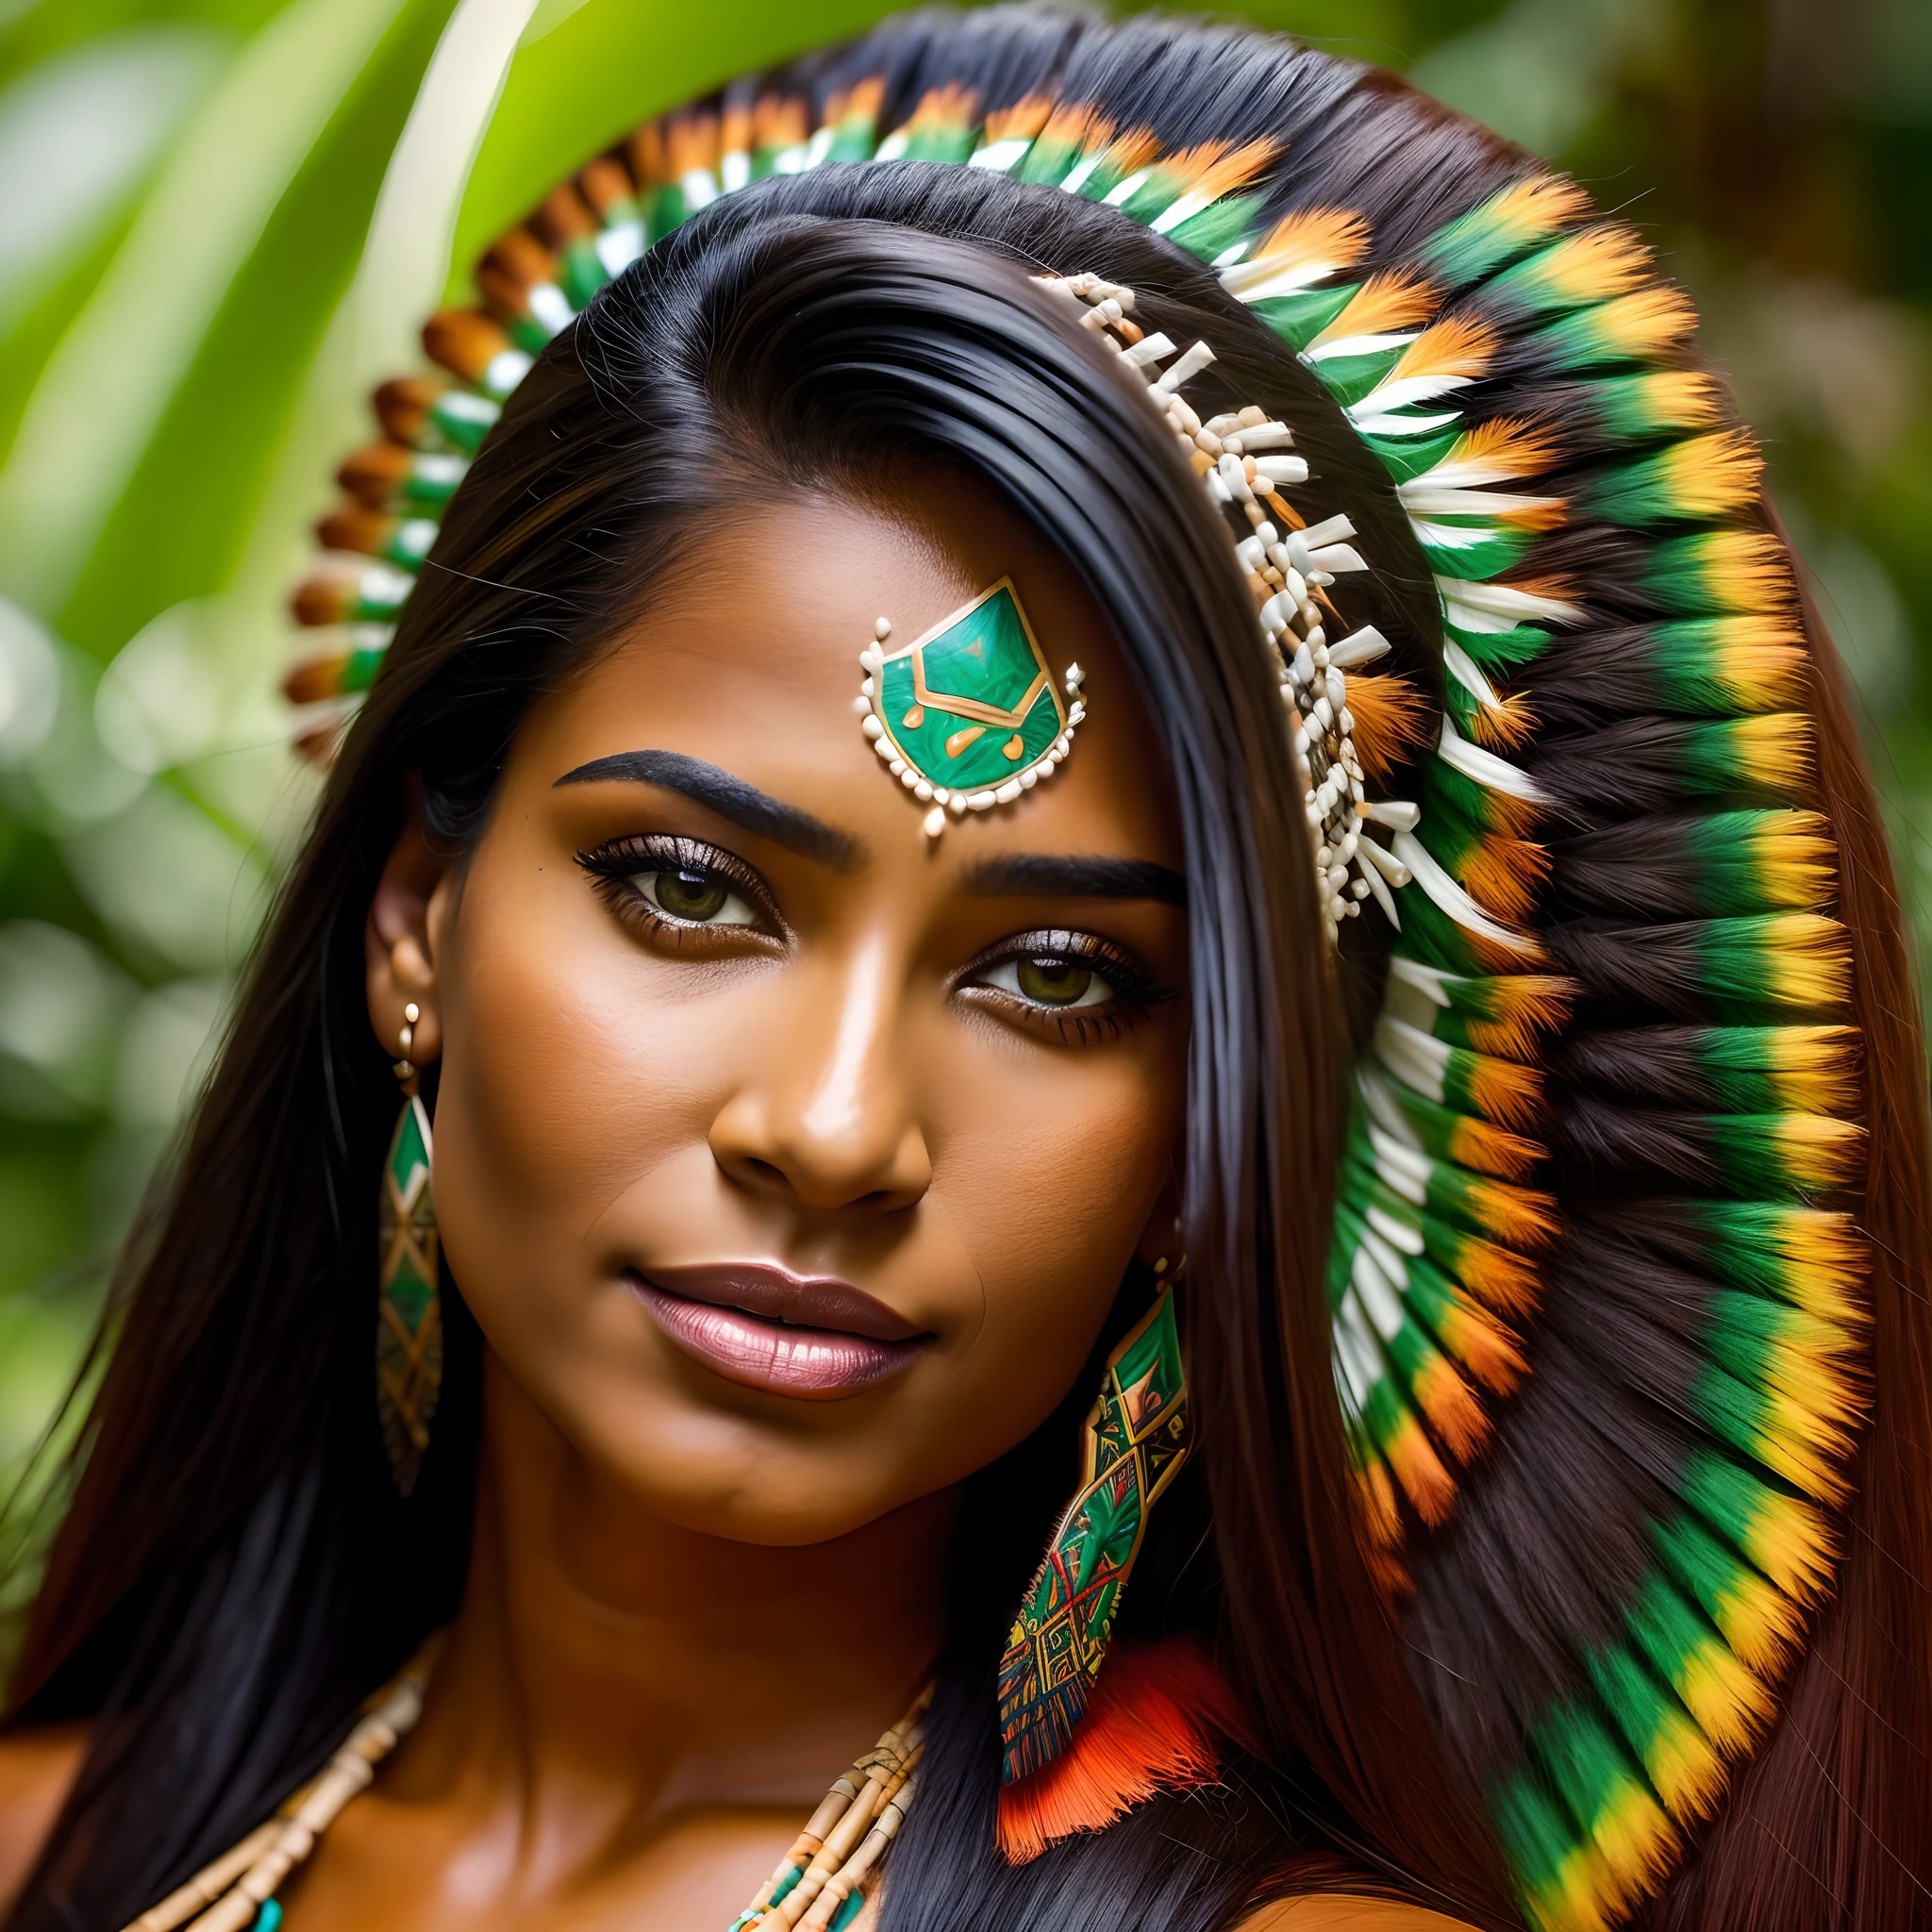 Красивая бразильская коренная женщина на вид 29 лет., темнокожий,длинные прямые черные волосы,8к изображение,или выше,olhos negros гиперреалистичныйs,rosto lindo гиперреалистичный,Никон Д700.(Тропический лес Амазонки на гиперреалистичном фоне,носить головной убор,средняя грудь наружу,местная соломенная юбка,Лицо очерчено типичной картиной, подчеркивающей лицо.,произведение искусства,гиперреалистичный)